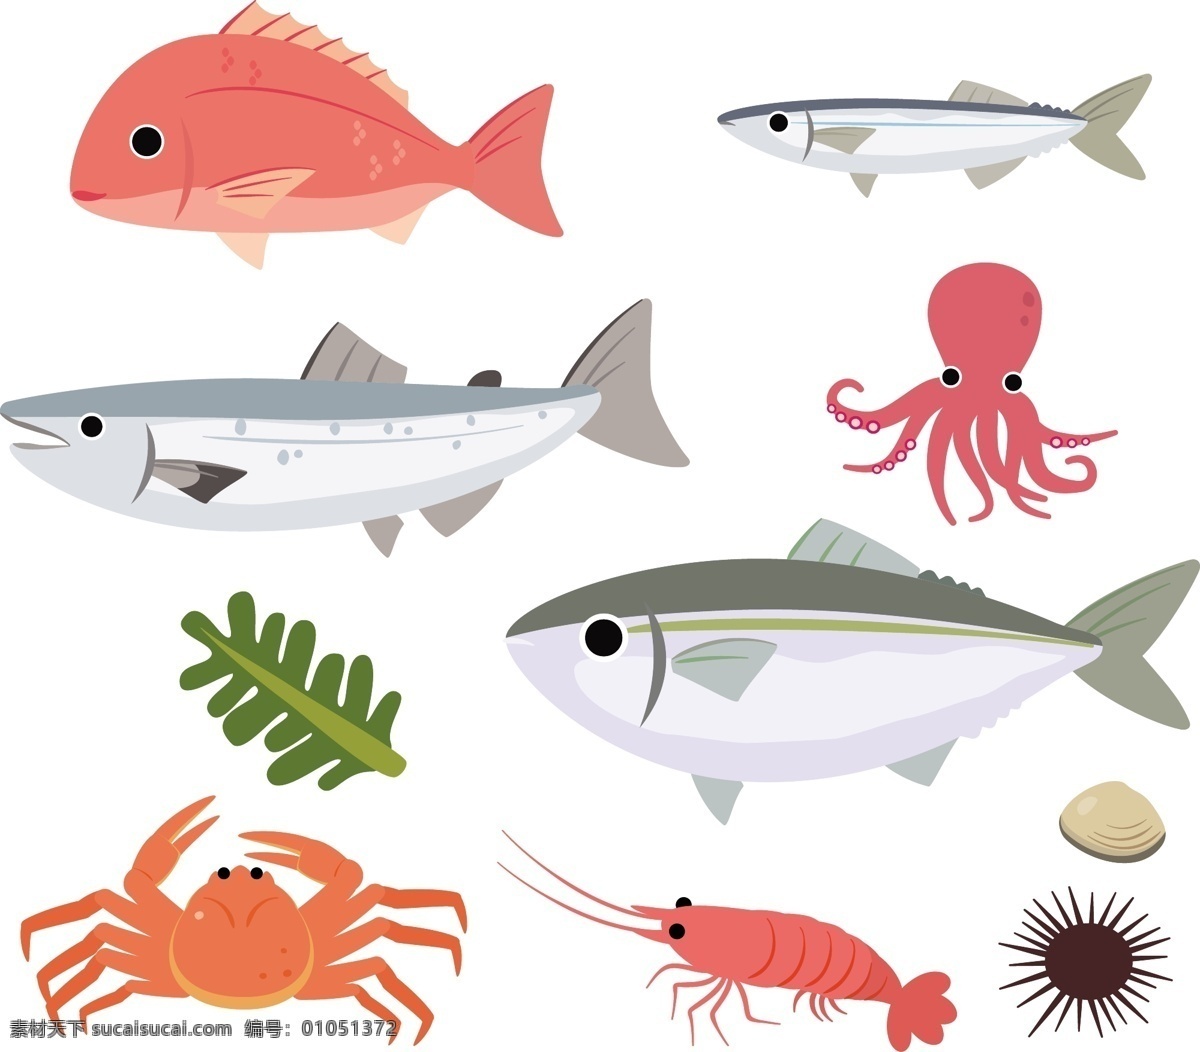 海洋生物 鱼 海底 海底世界 卡通鱼 海鲜 乌贼 海星 螃蟹 海虾 海参 手绘 鱼类 海底素材 大海 鱼群 海底世界图片 海洋 生物世界